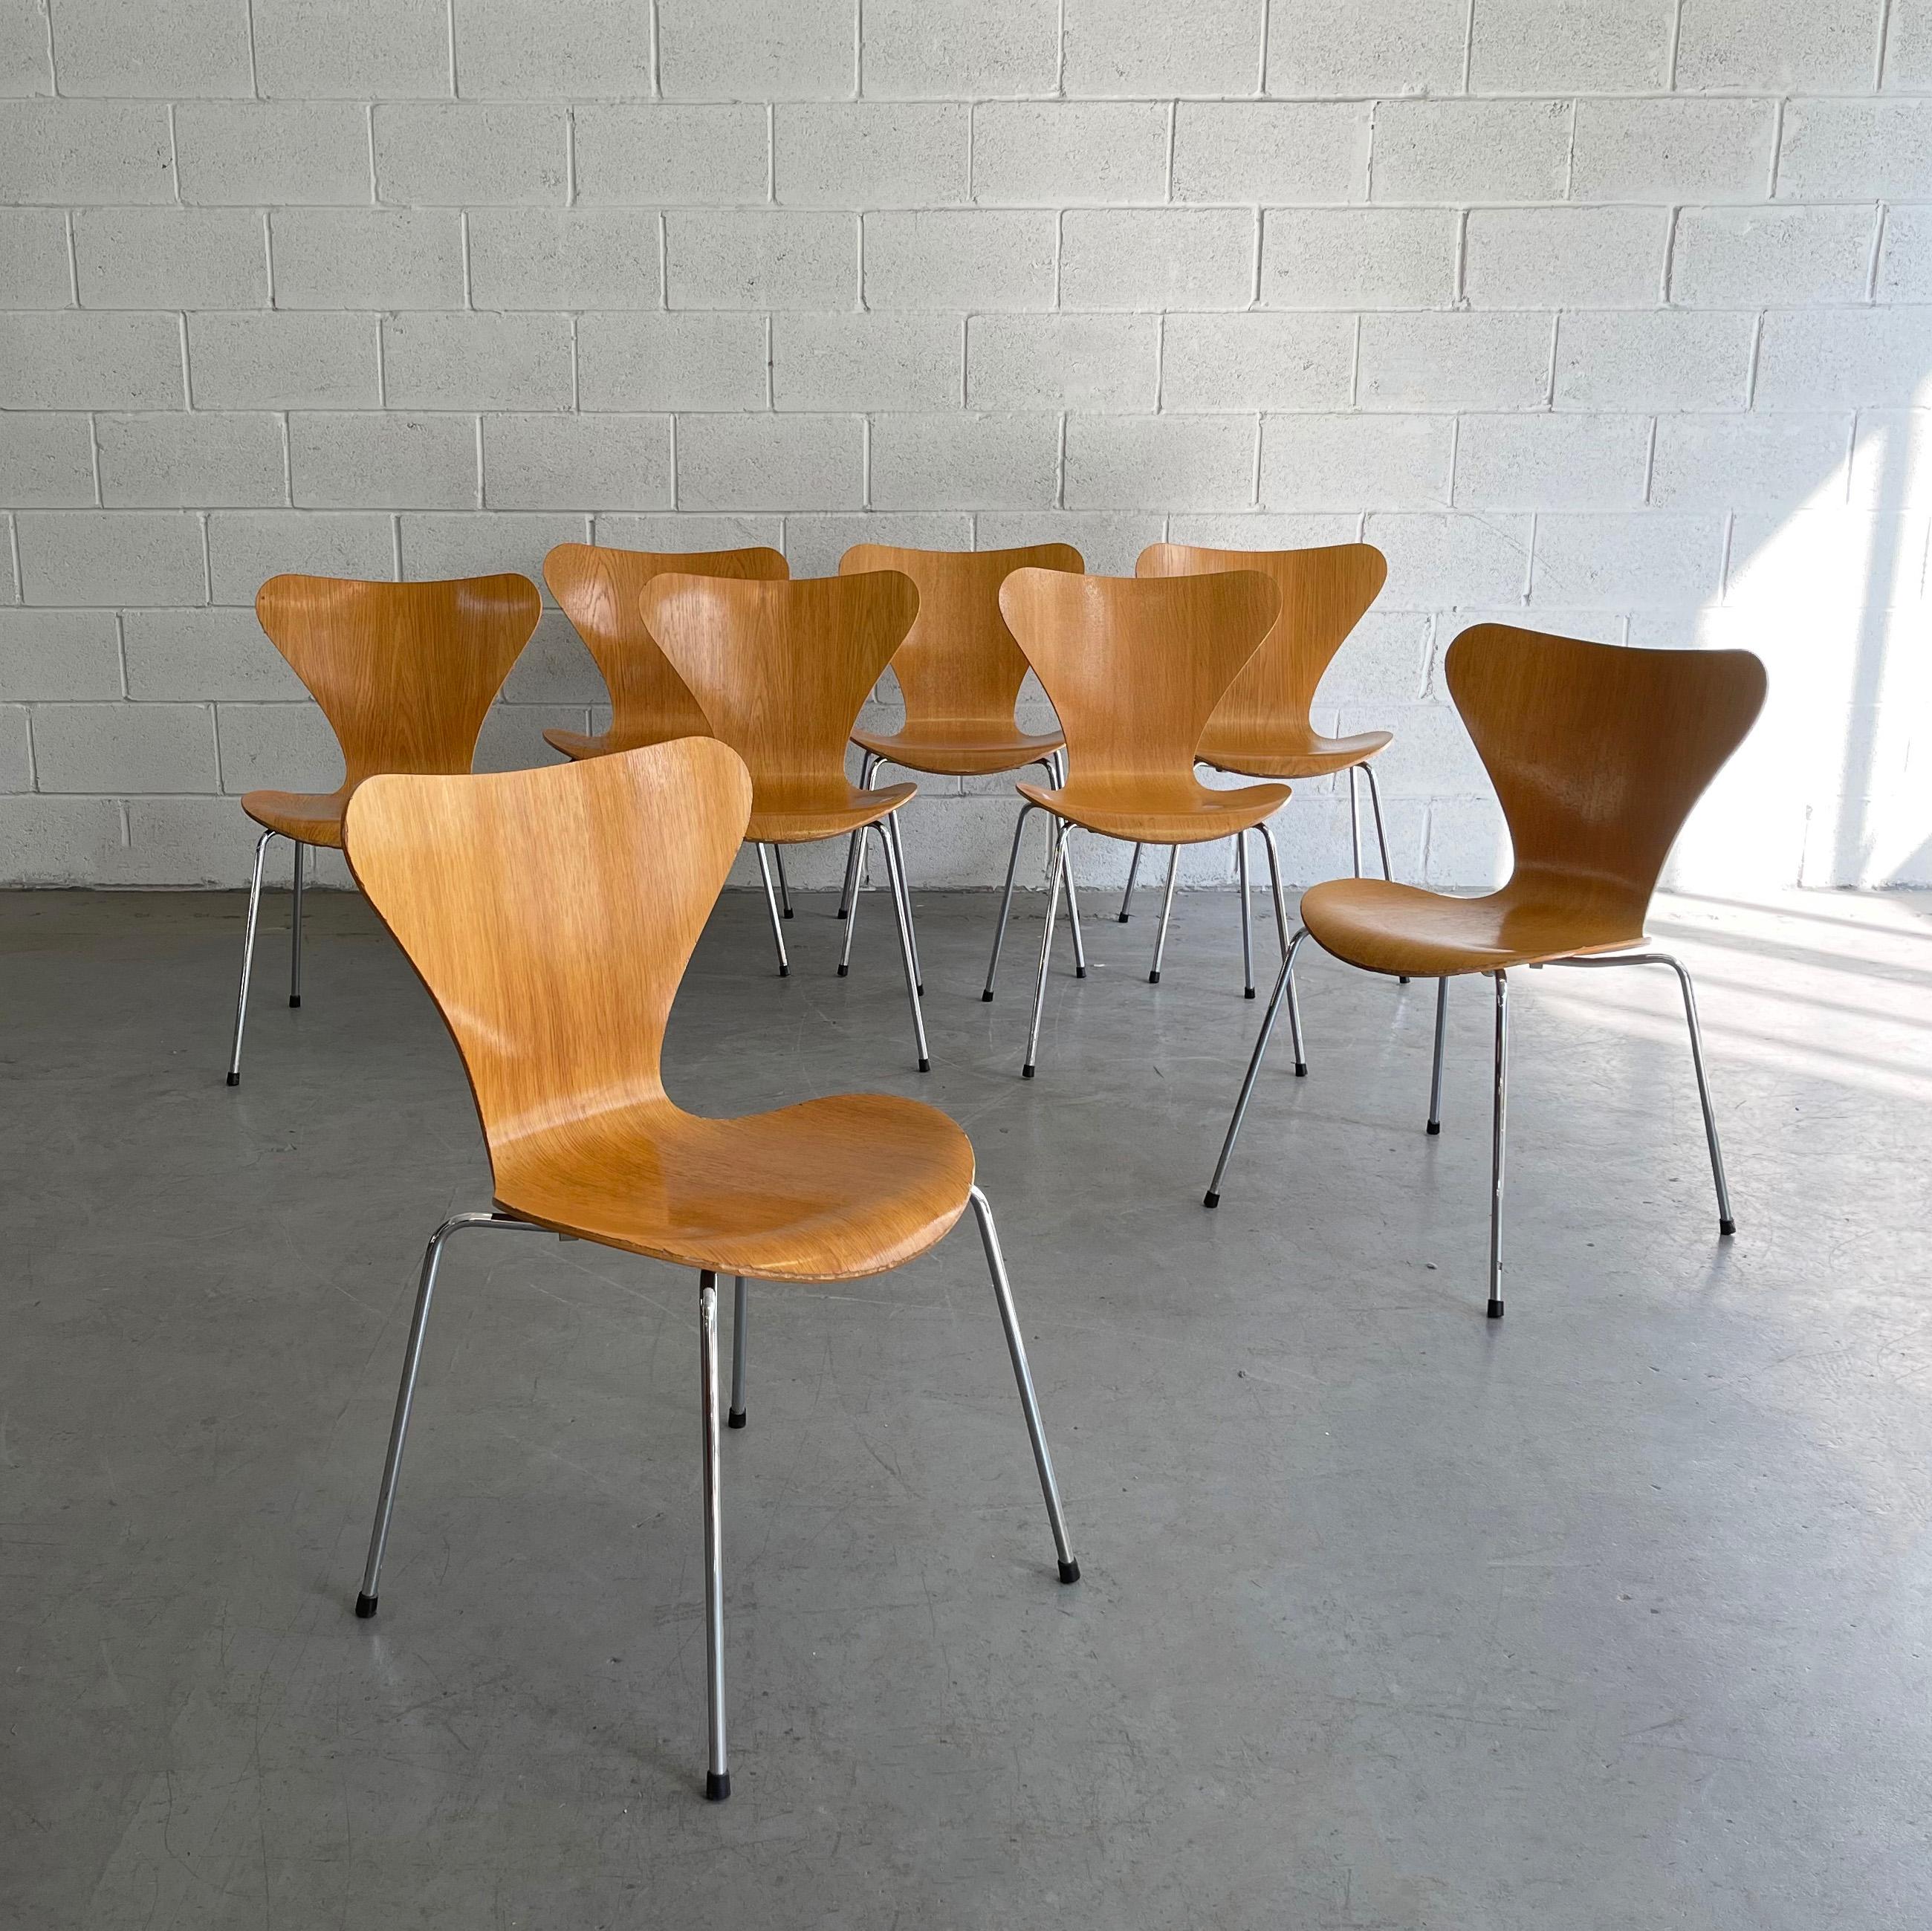 Iconique, The Modern Scandinavian, Série 7, modèle 3107 chaises d'Arne Jacobsen pour Fritz Hansen. Parfaites pour la salle à manger ou le bureau. 6 chaises empilables sont disponibles, 2 en frêne et 4 en érable. Ils sont vendus individuellement. Les